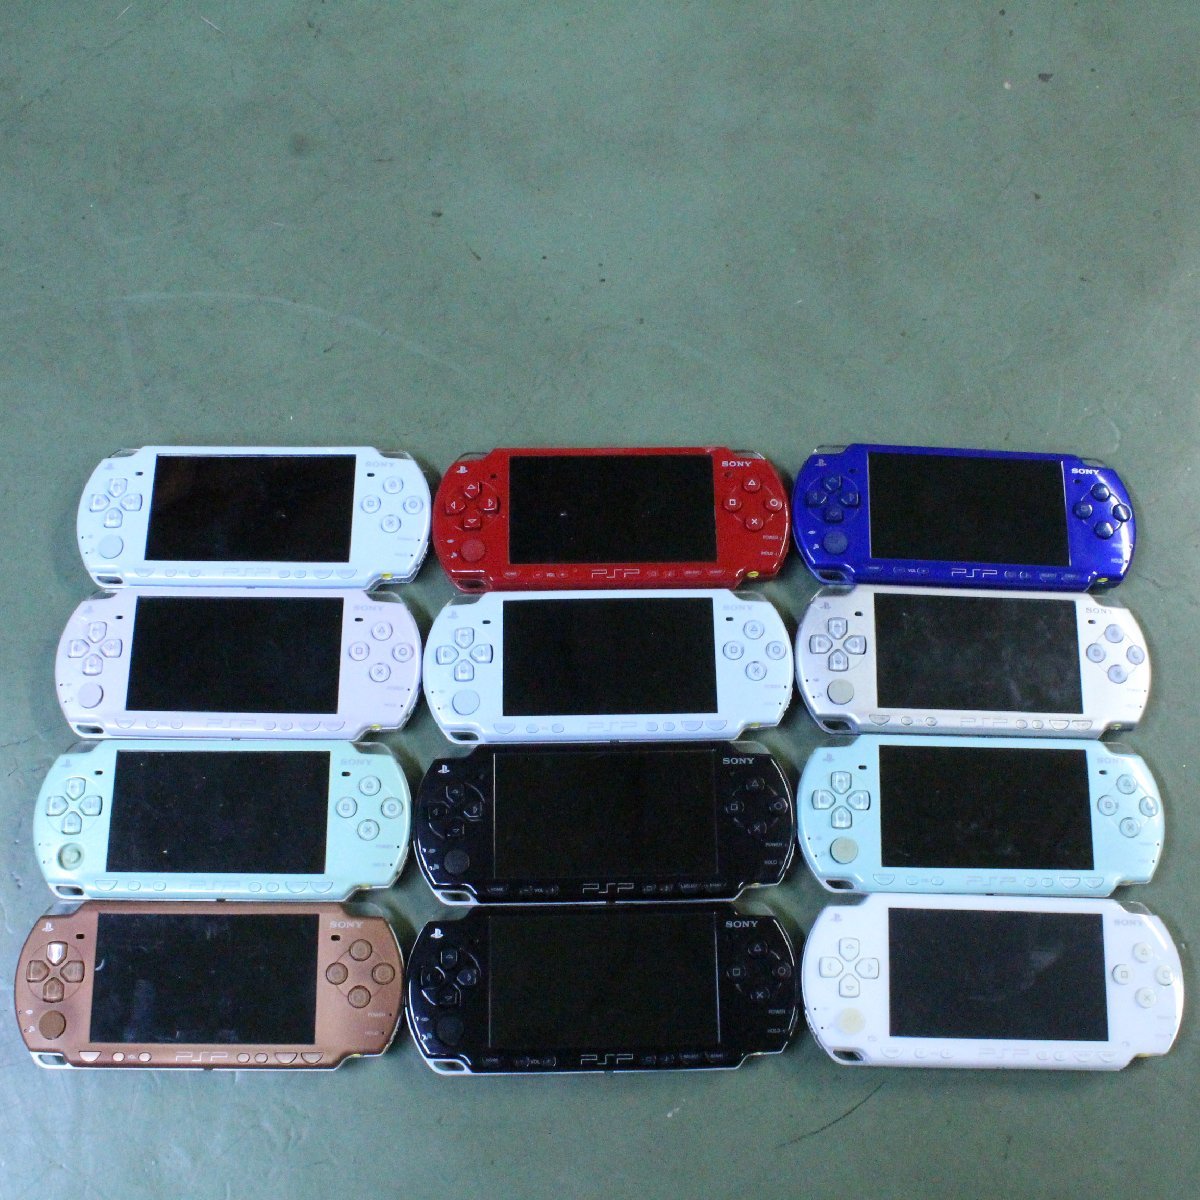 正規品! 中古 まとめ ピーエスピー2000 ピーエスピー 2000 PSP PSP-2000 ソニー Sony ジャンク 本体 11台 PSP2000 中古品 Junk Console Game ゲーム PSP3000シリーズ